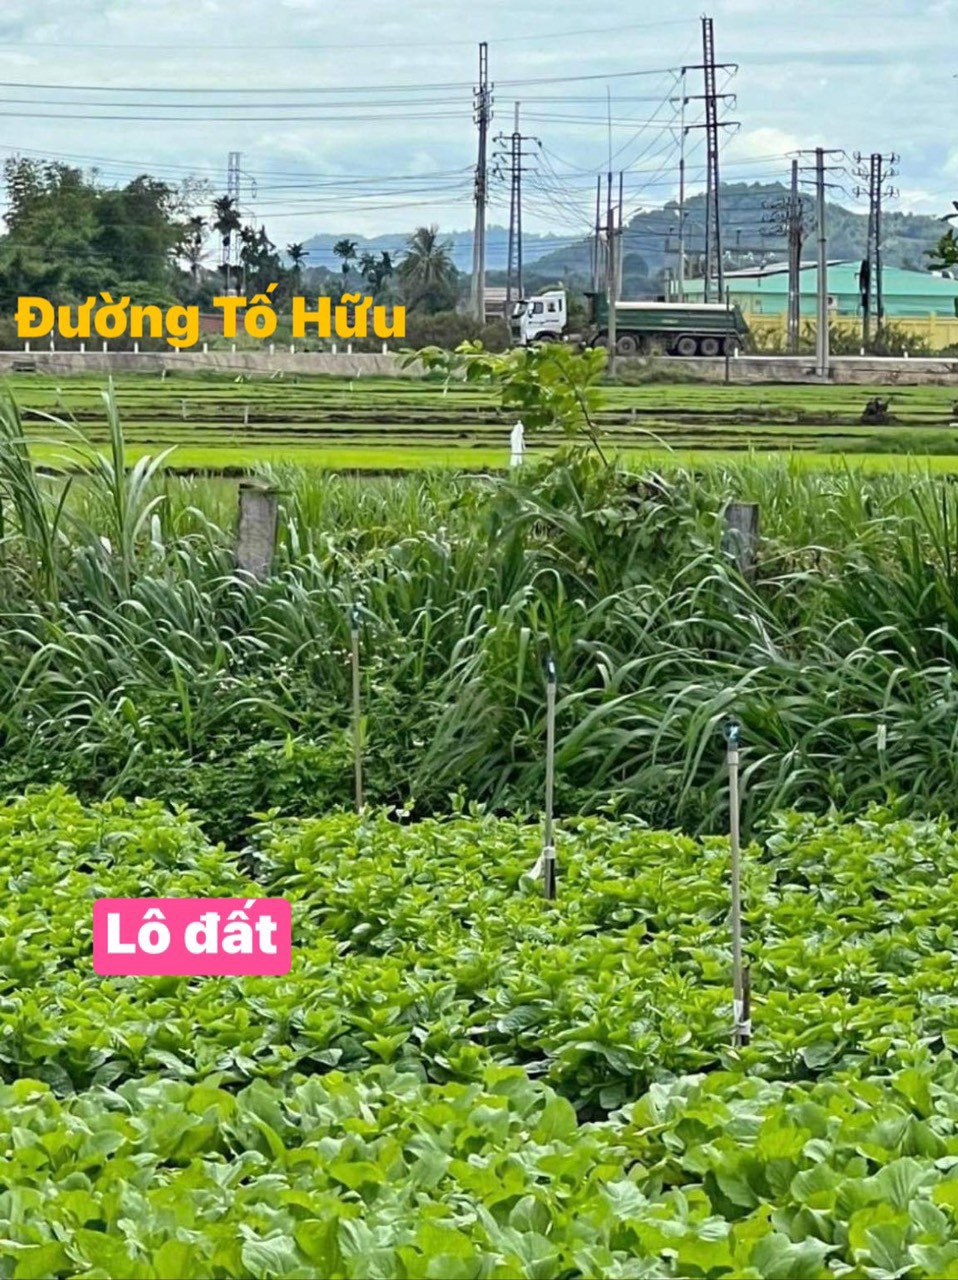 CHÍNH CHỦ CẦN BÁN NHANH Lô Đất Đẹp tại TP Buôn Ma Thuột , tỉnh Đắk Lắk 13828413